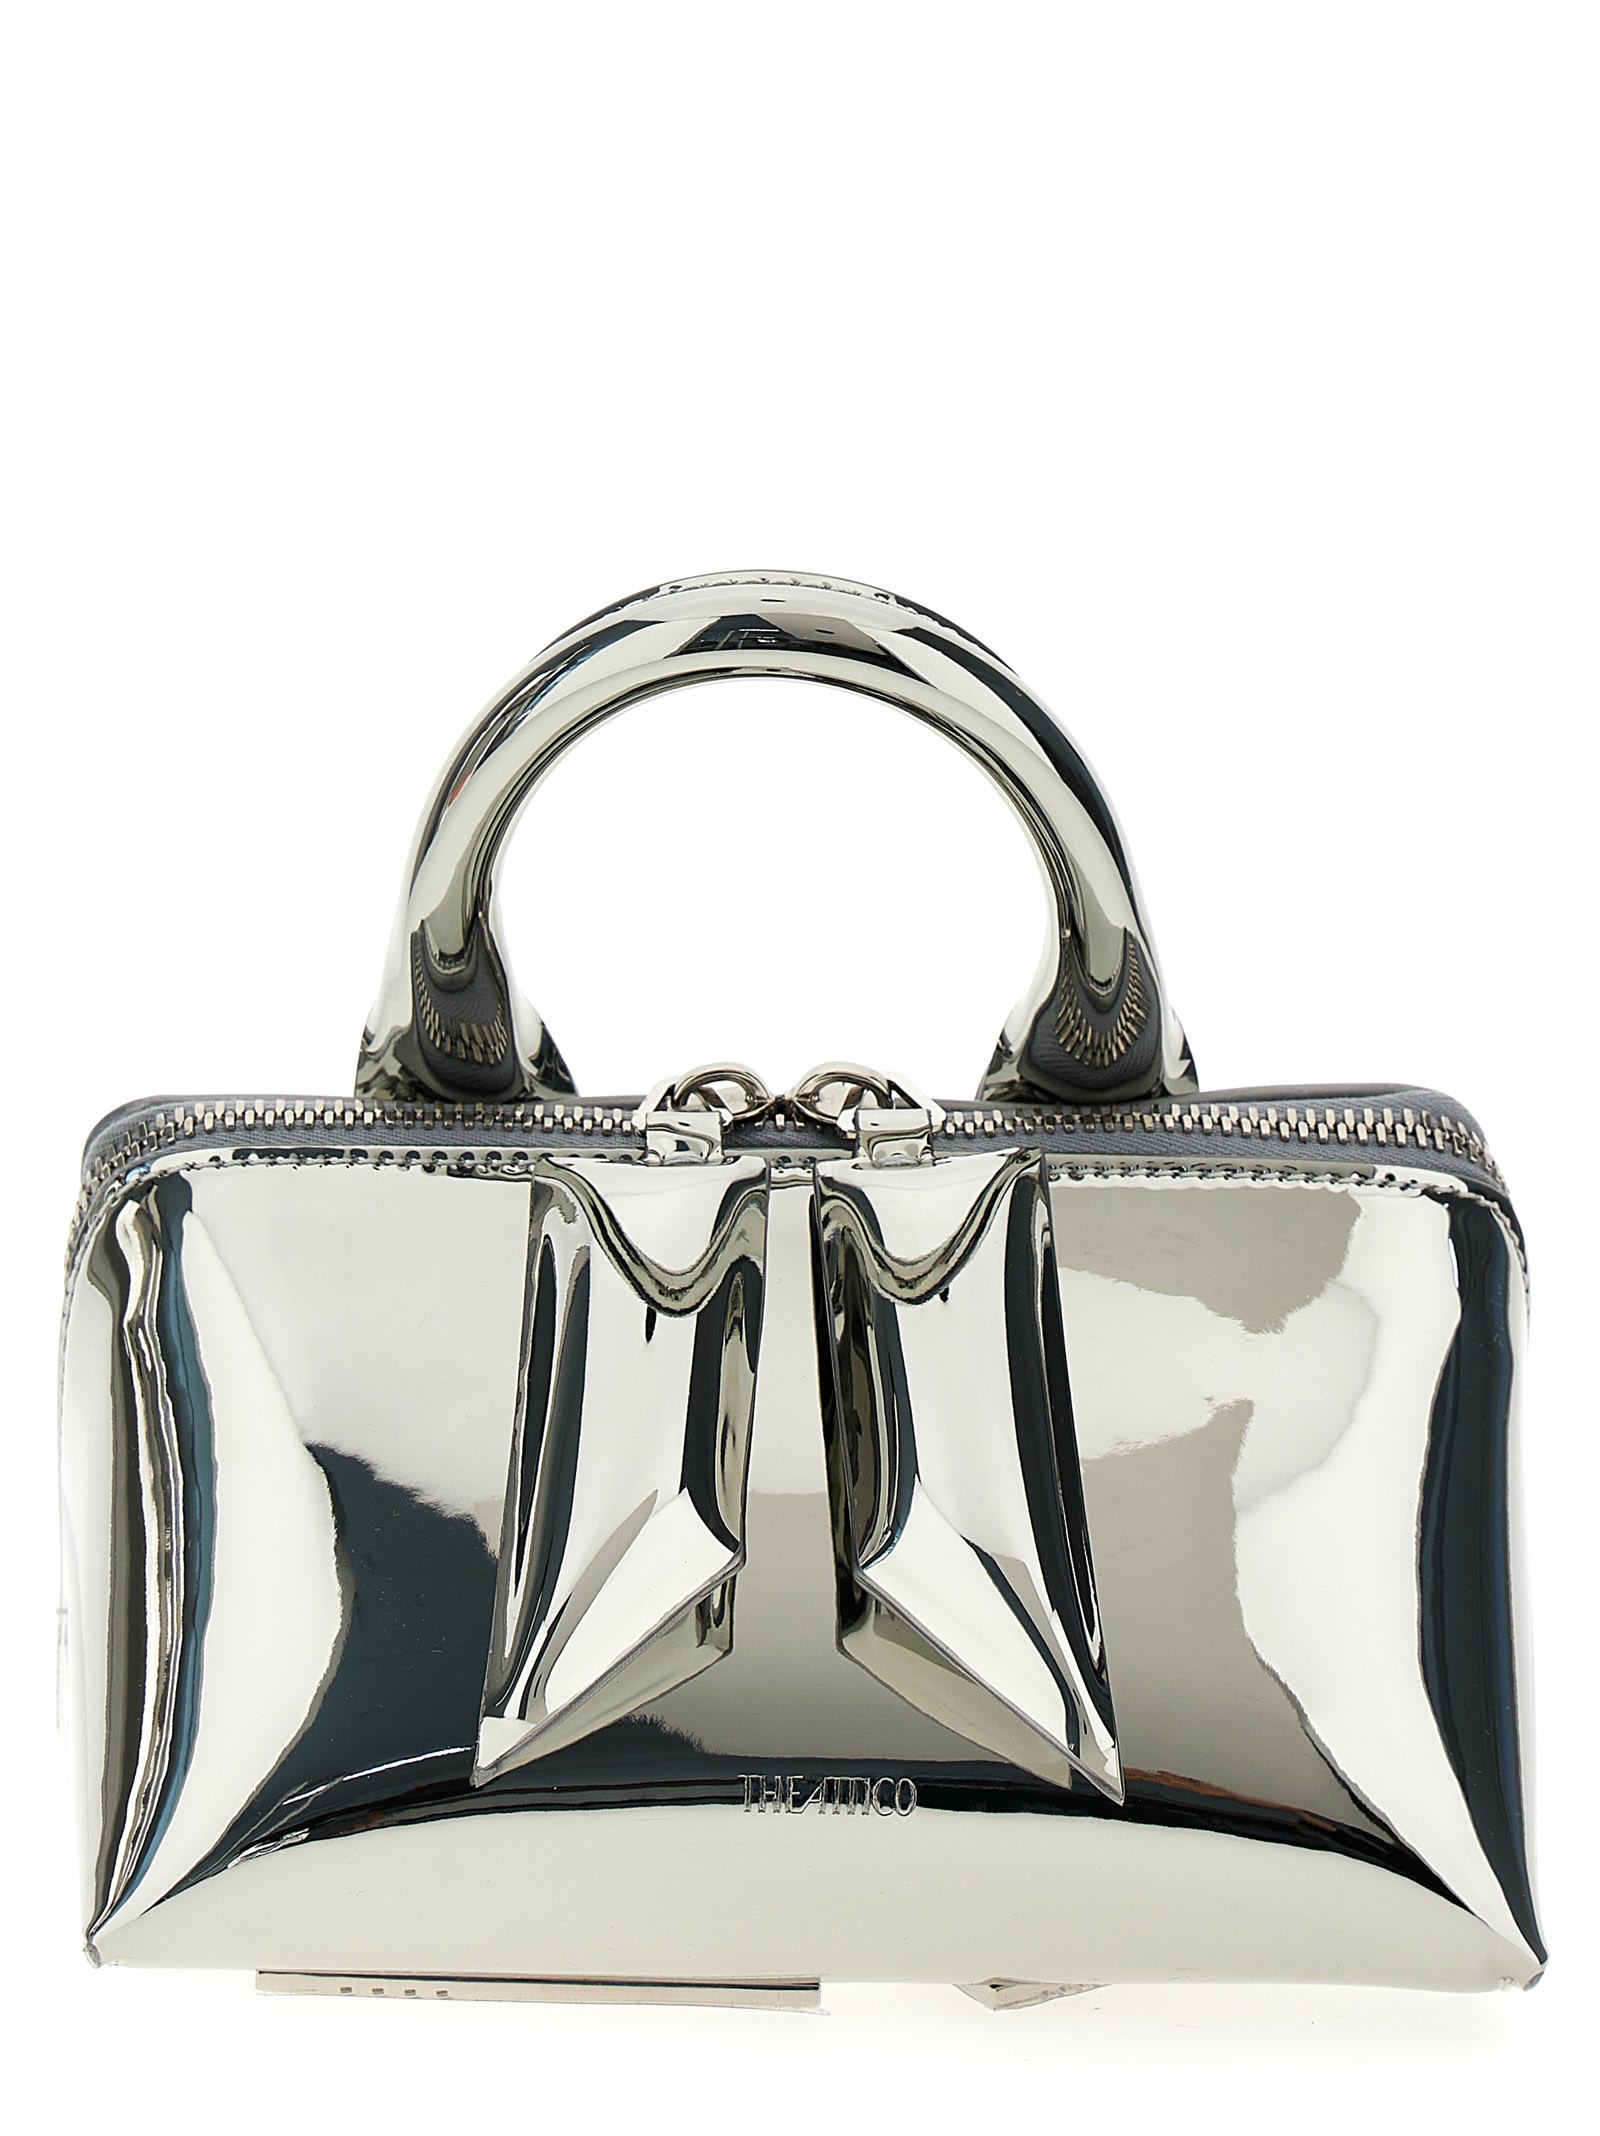 Attico Friday Handbag In Silver